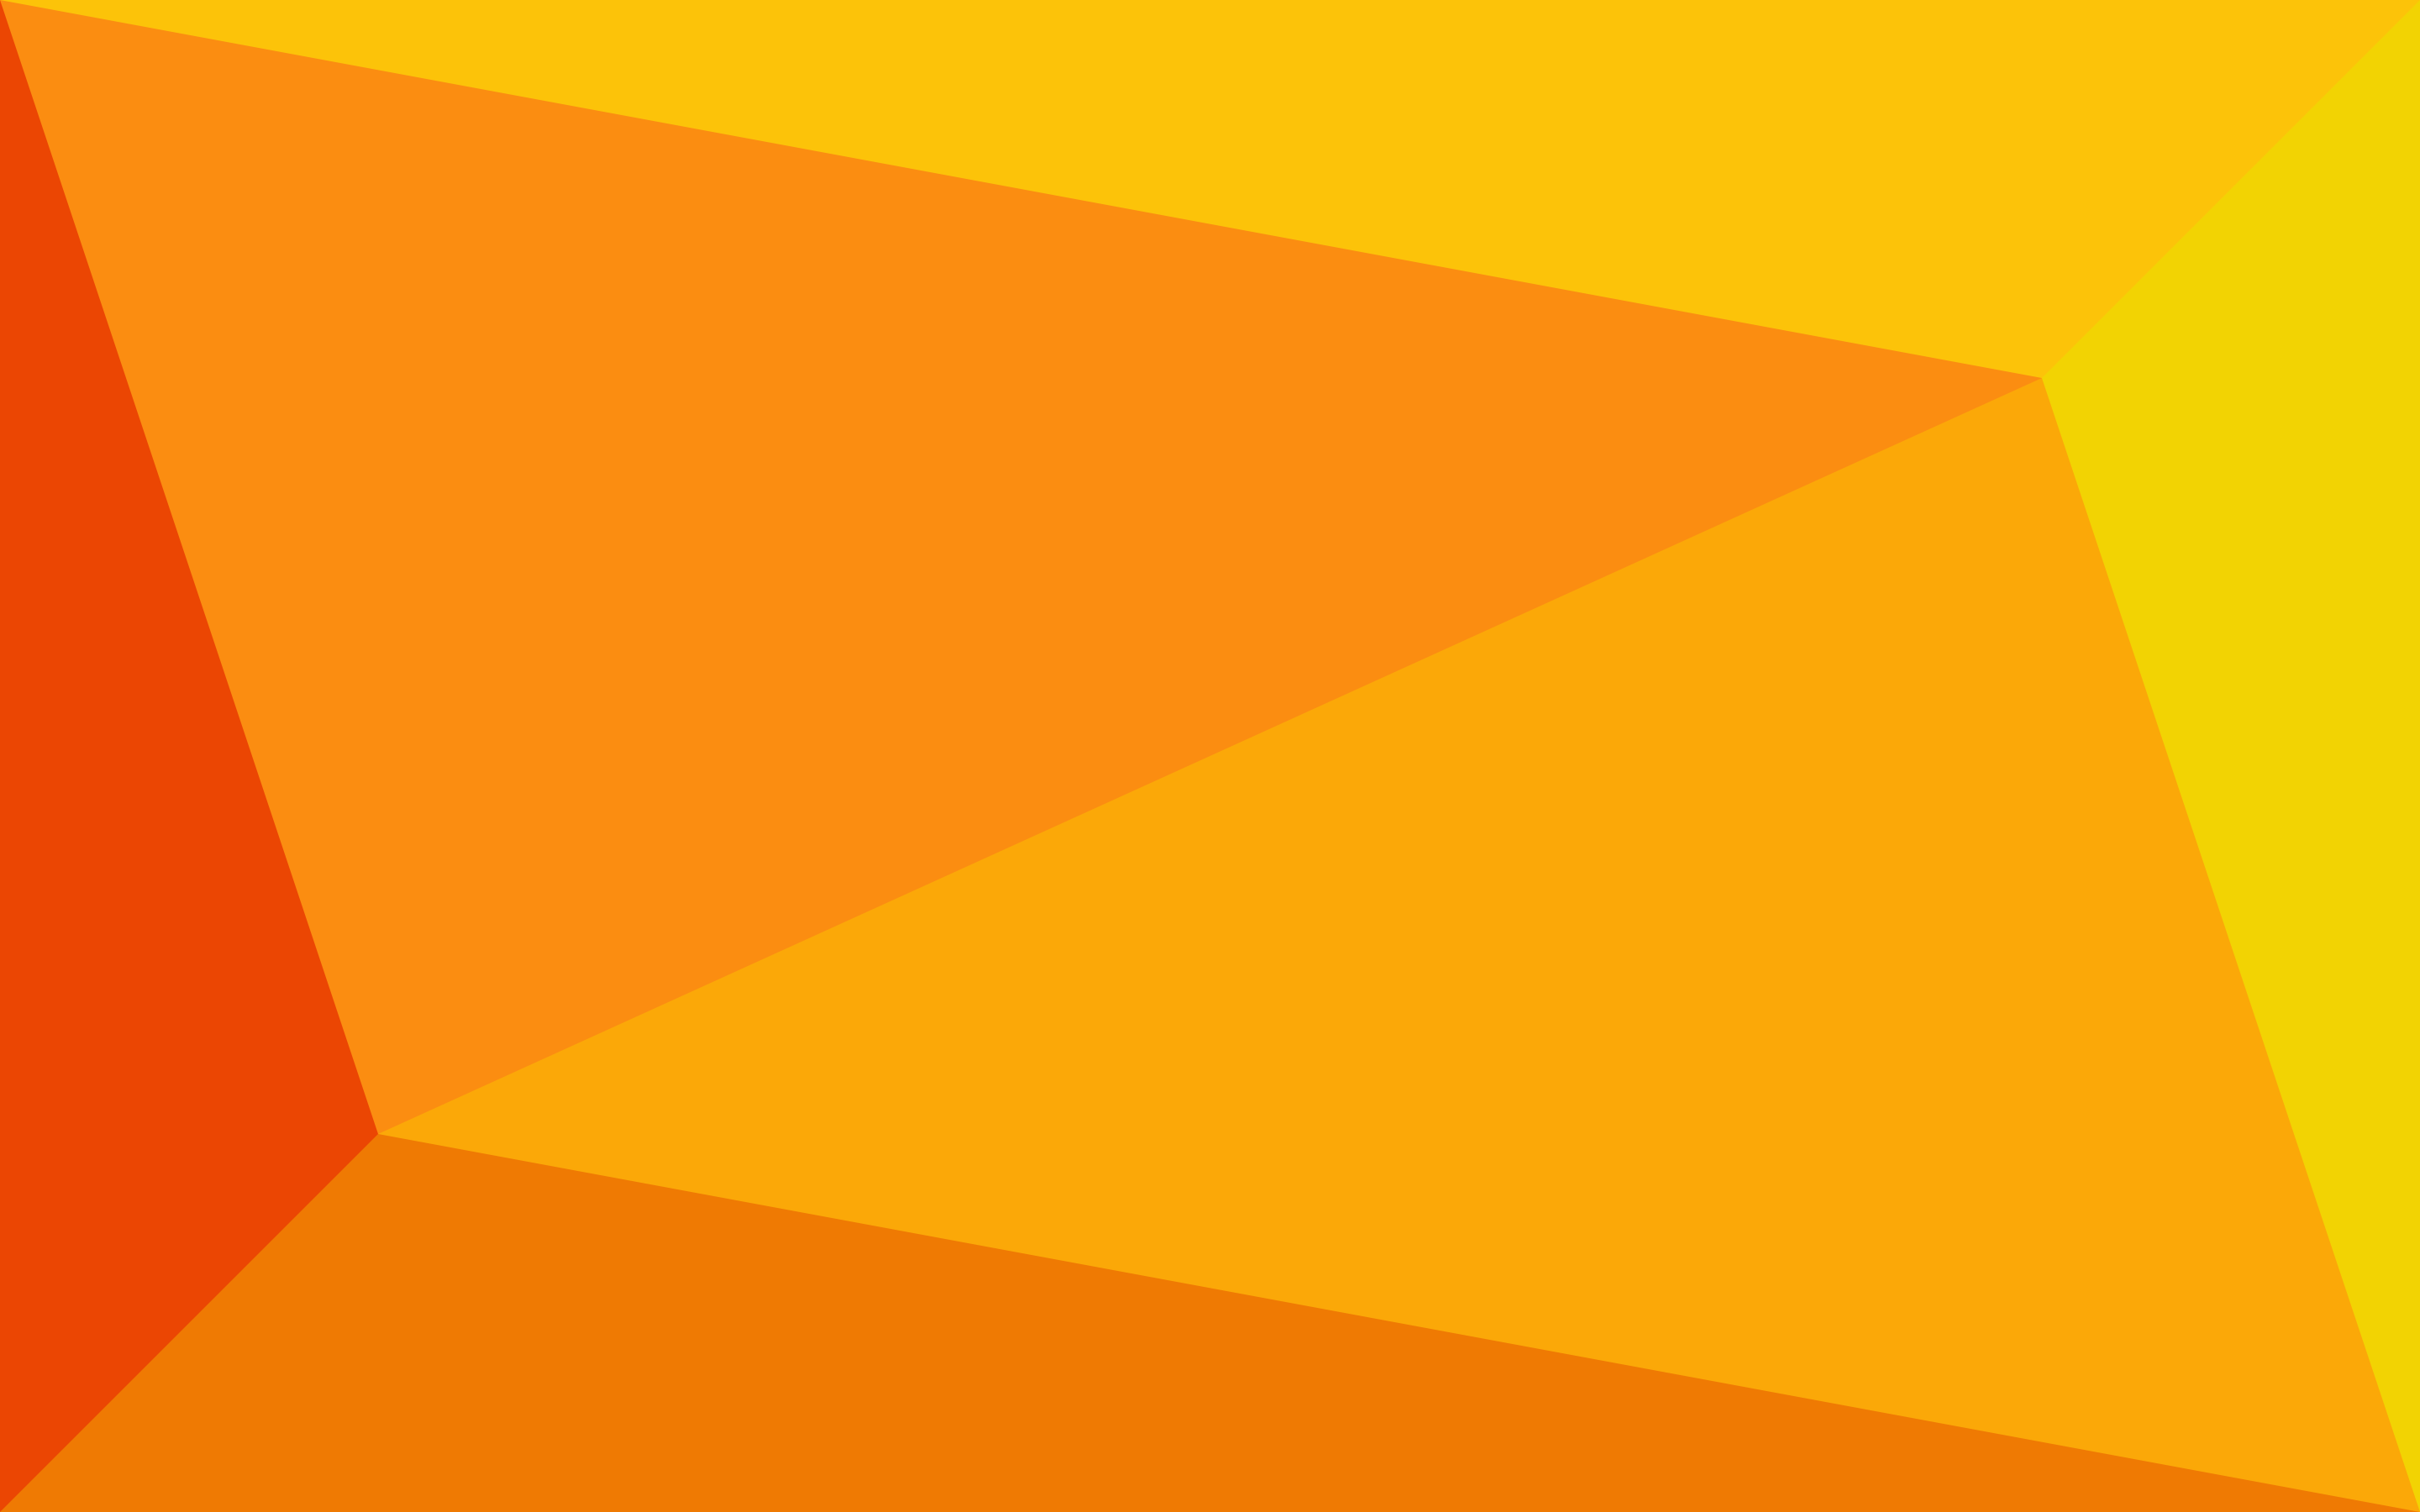 Khám phá hình nền chủ đề màu cam tuyệt vời, đem đến sự tươi mới cho màn hình của bạn. Với sự pha trộn giữa màu sắc tươi trẻ và độ phân giải cao, trải nghiệm của bạn với hình nền này sẽ mang lại nhiều điều bất ngờ và thú vị!